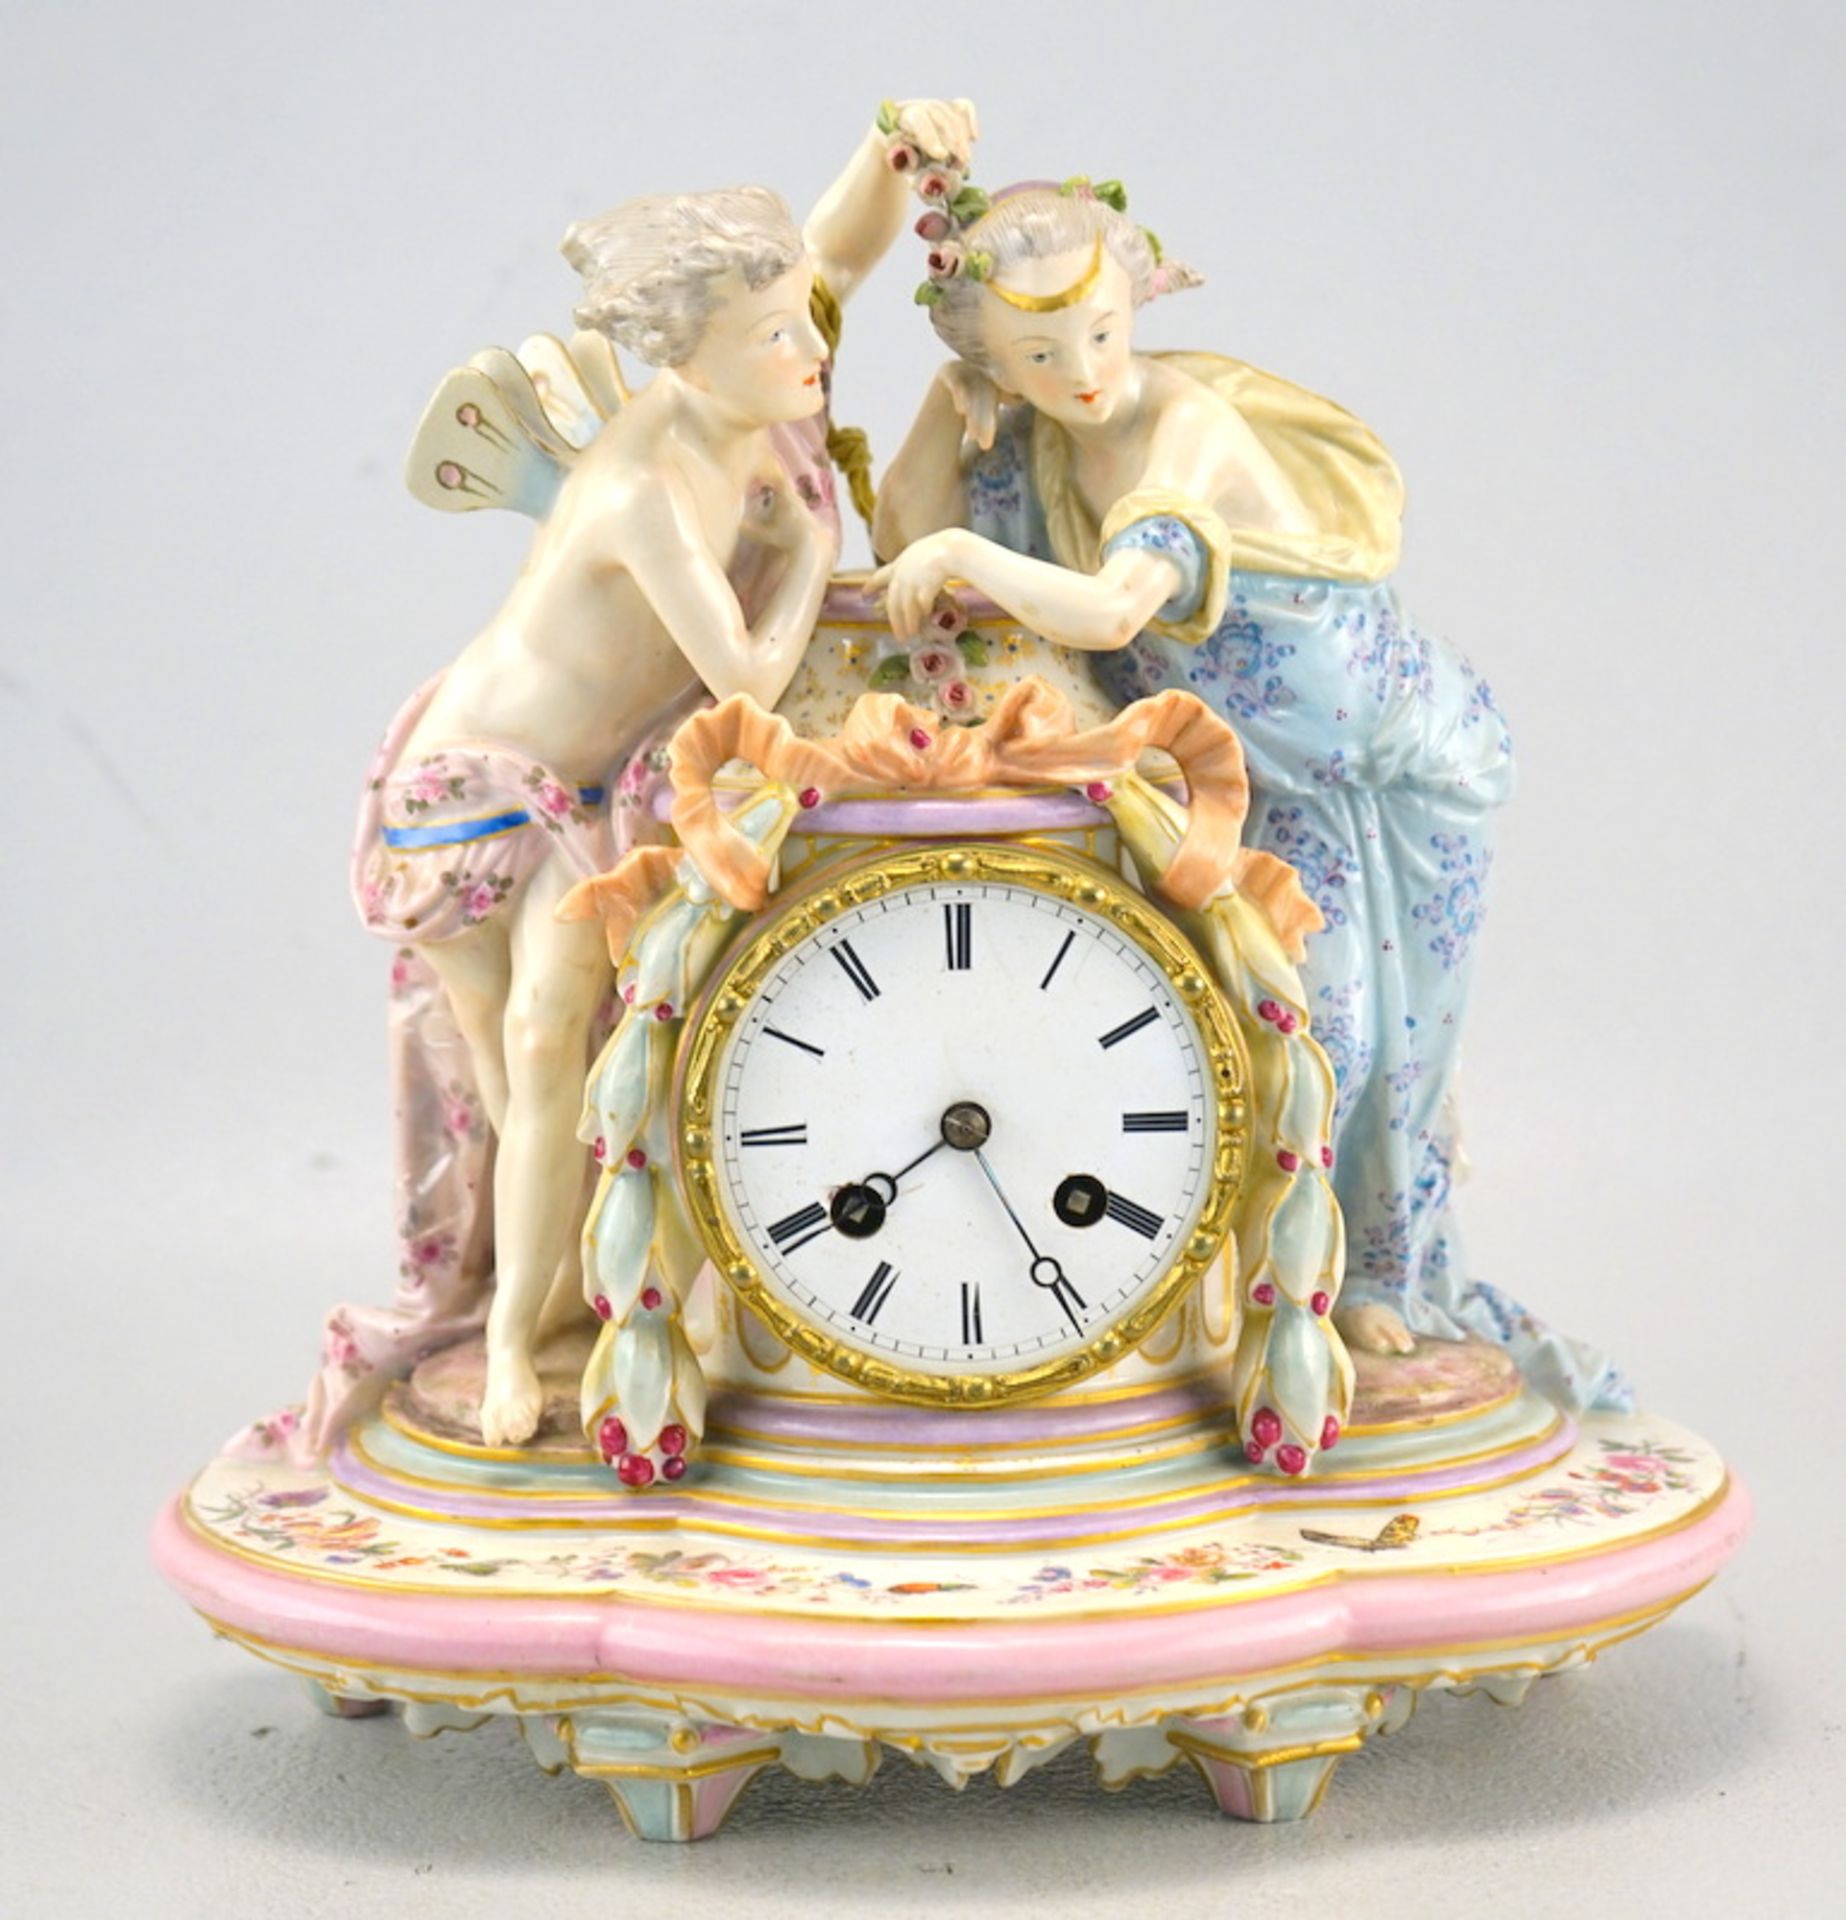 Porzellanuhr mit Cupido und Venus, Frankreich, 19. Jh.